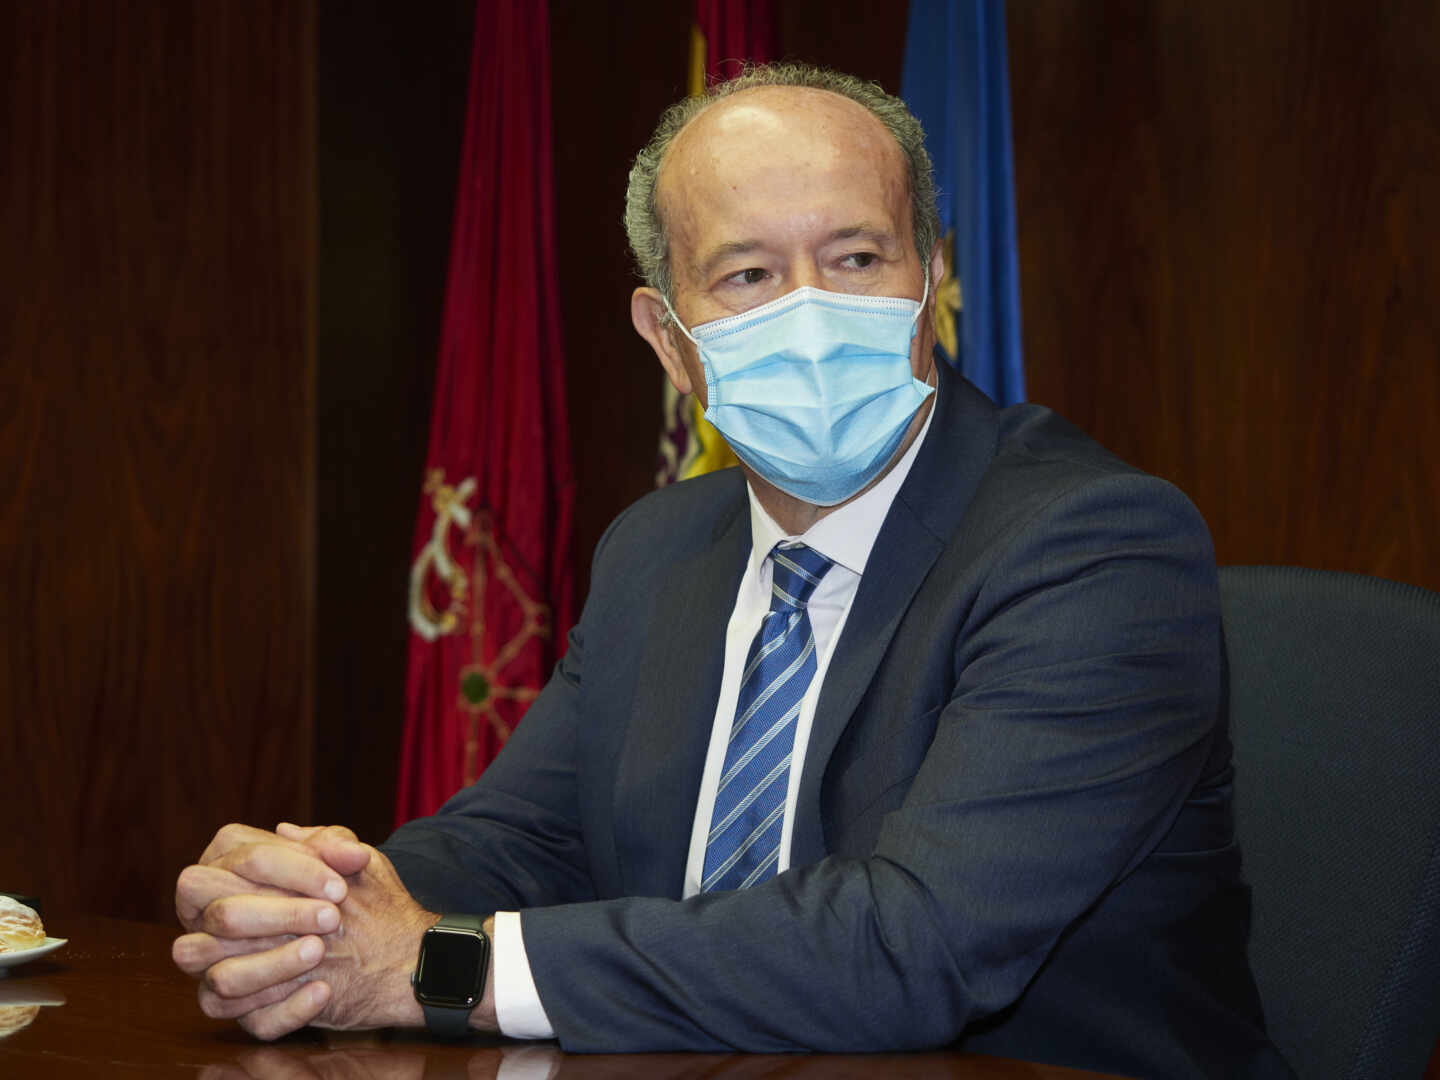 El ministro de Justicia, Juan Carlos Campo, durante una reunión con la Sala de Gobierno del Tribunal Superior de Justicia de Navarra